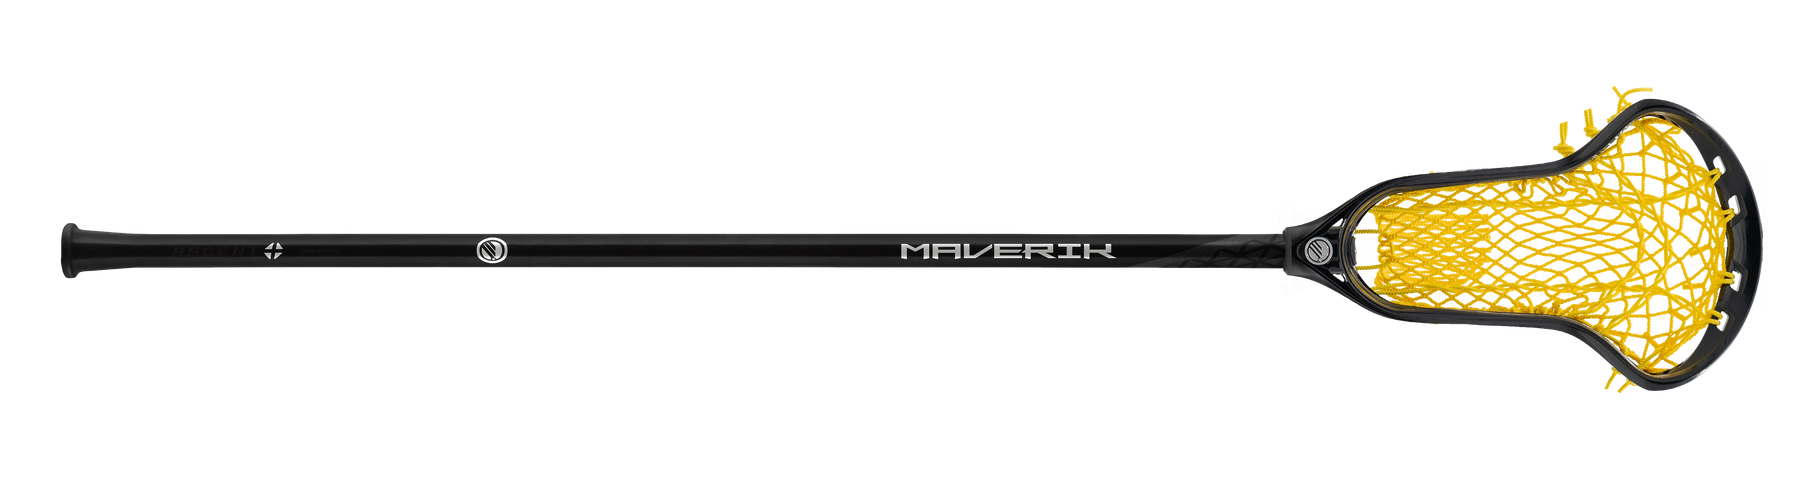 Maverik Ascent Plus Full Mesh Lacrosse Complete Stick